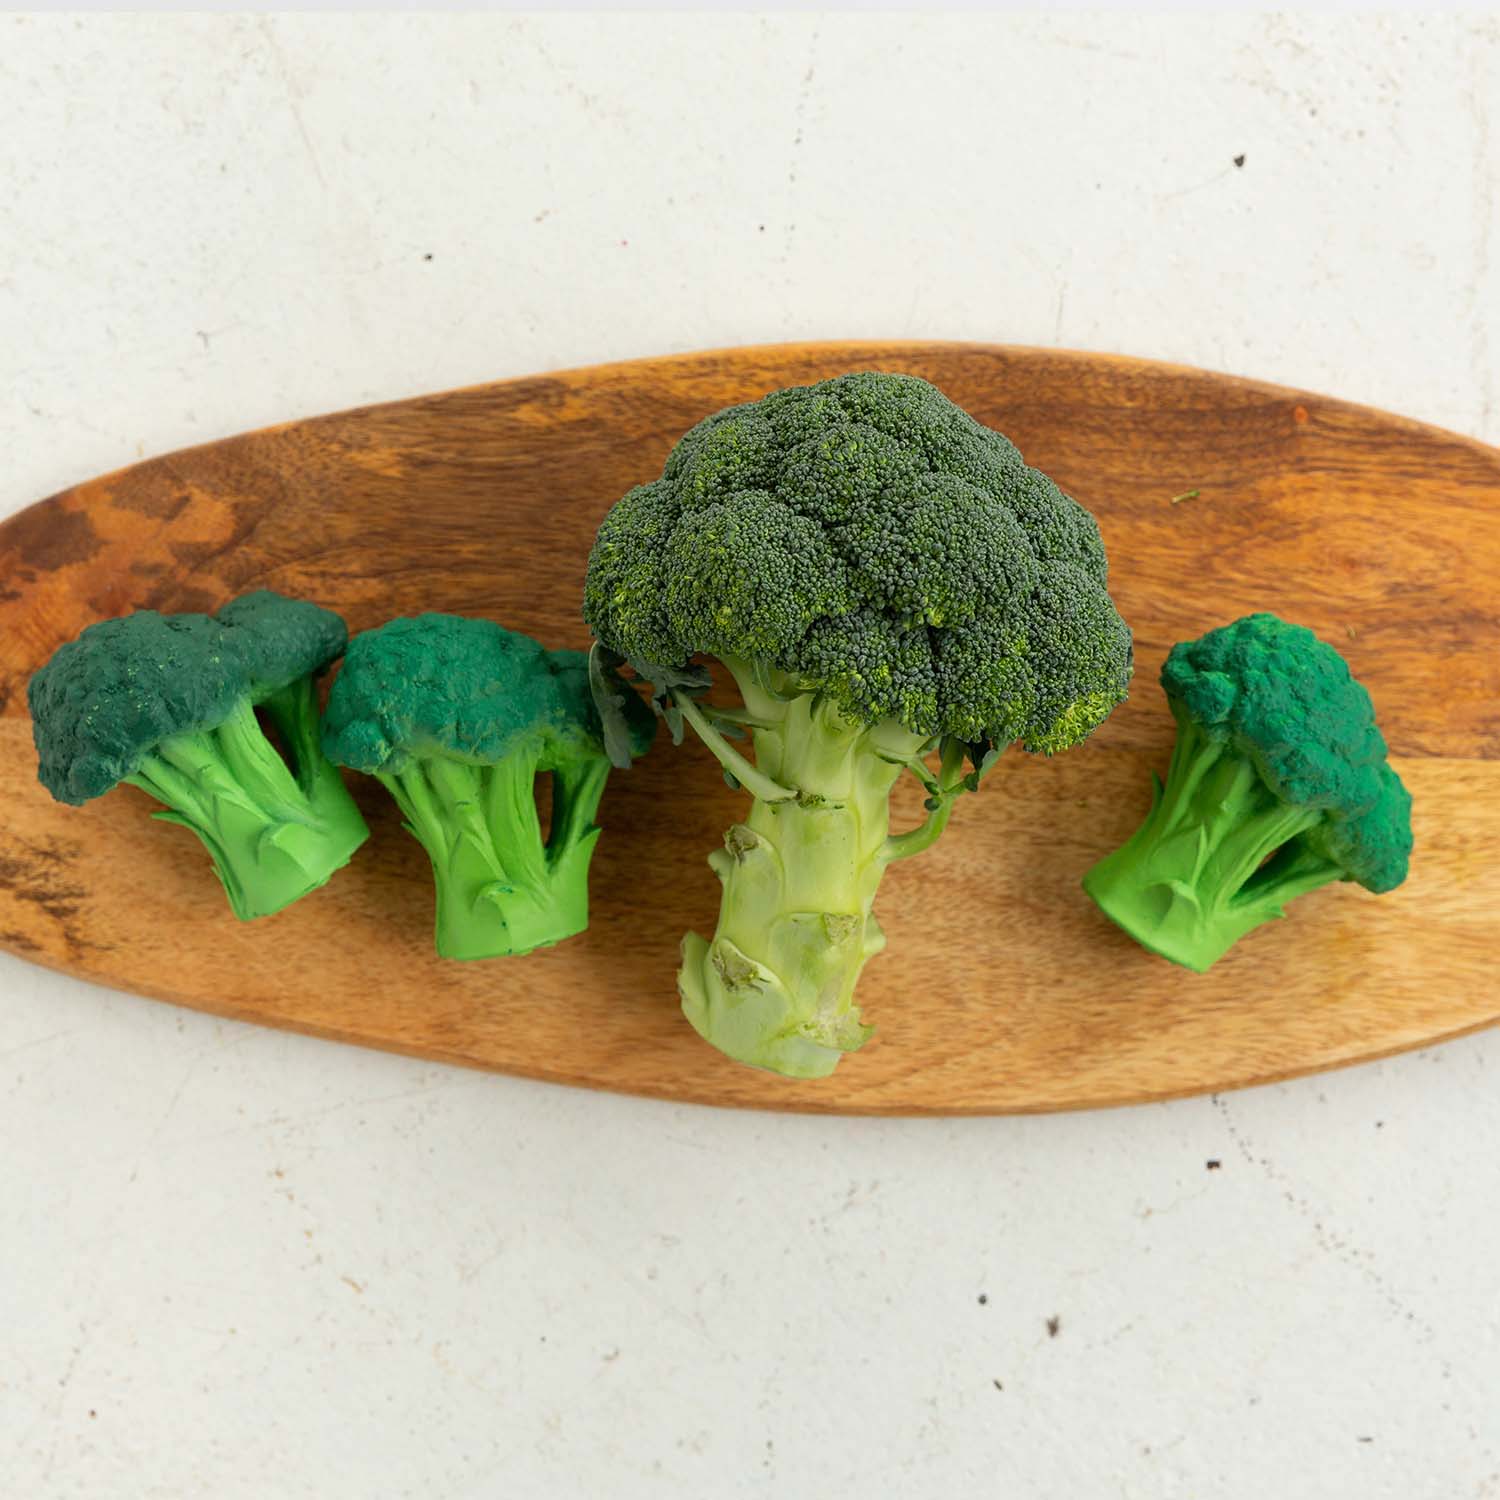 Bijtspeeltje Broccoli (Brucy The Broccoli)